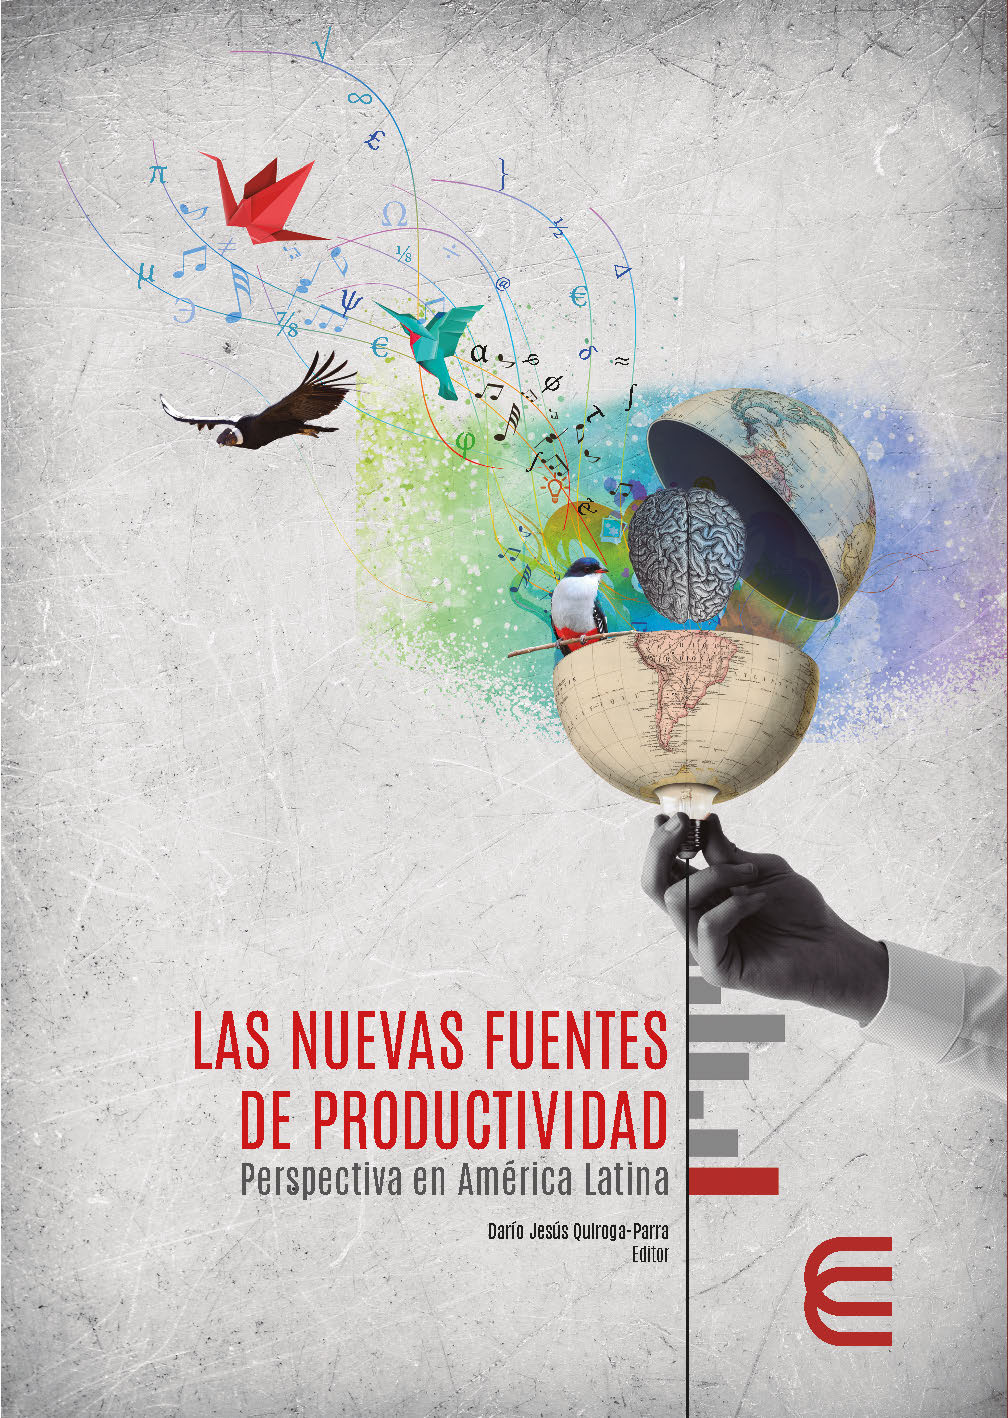 Imagen de portada del libro Las nuevas fuentes de productividad